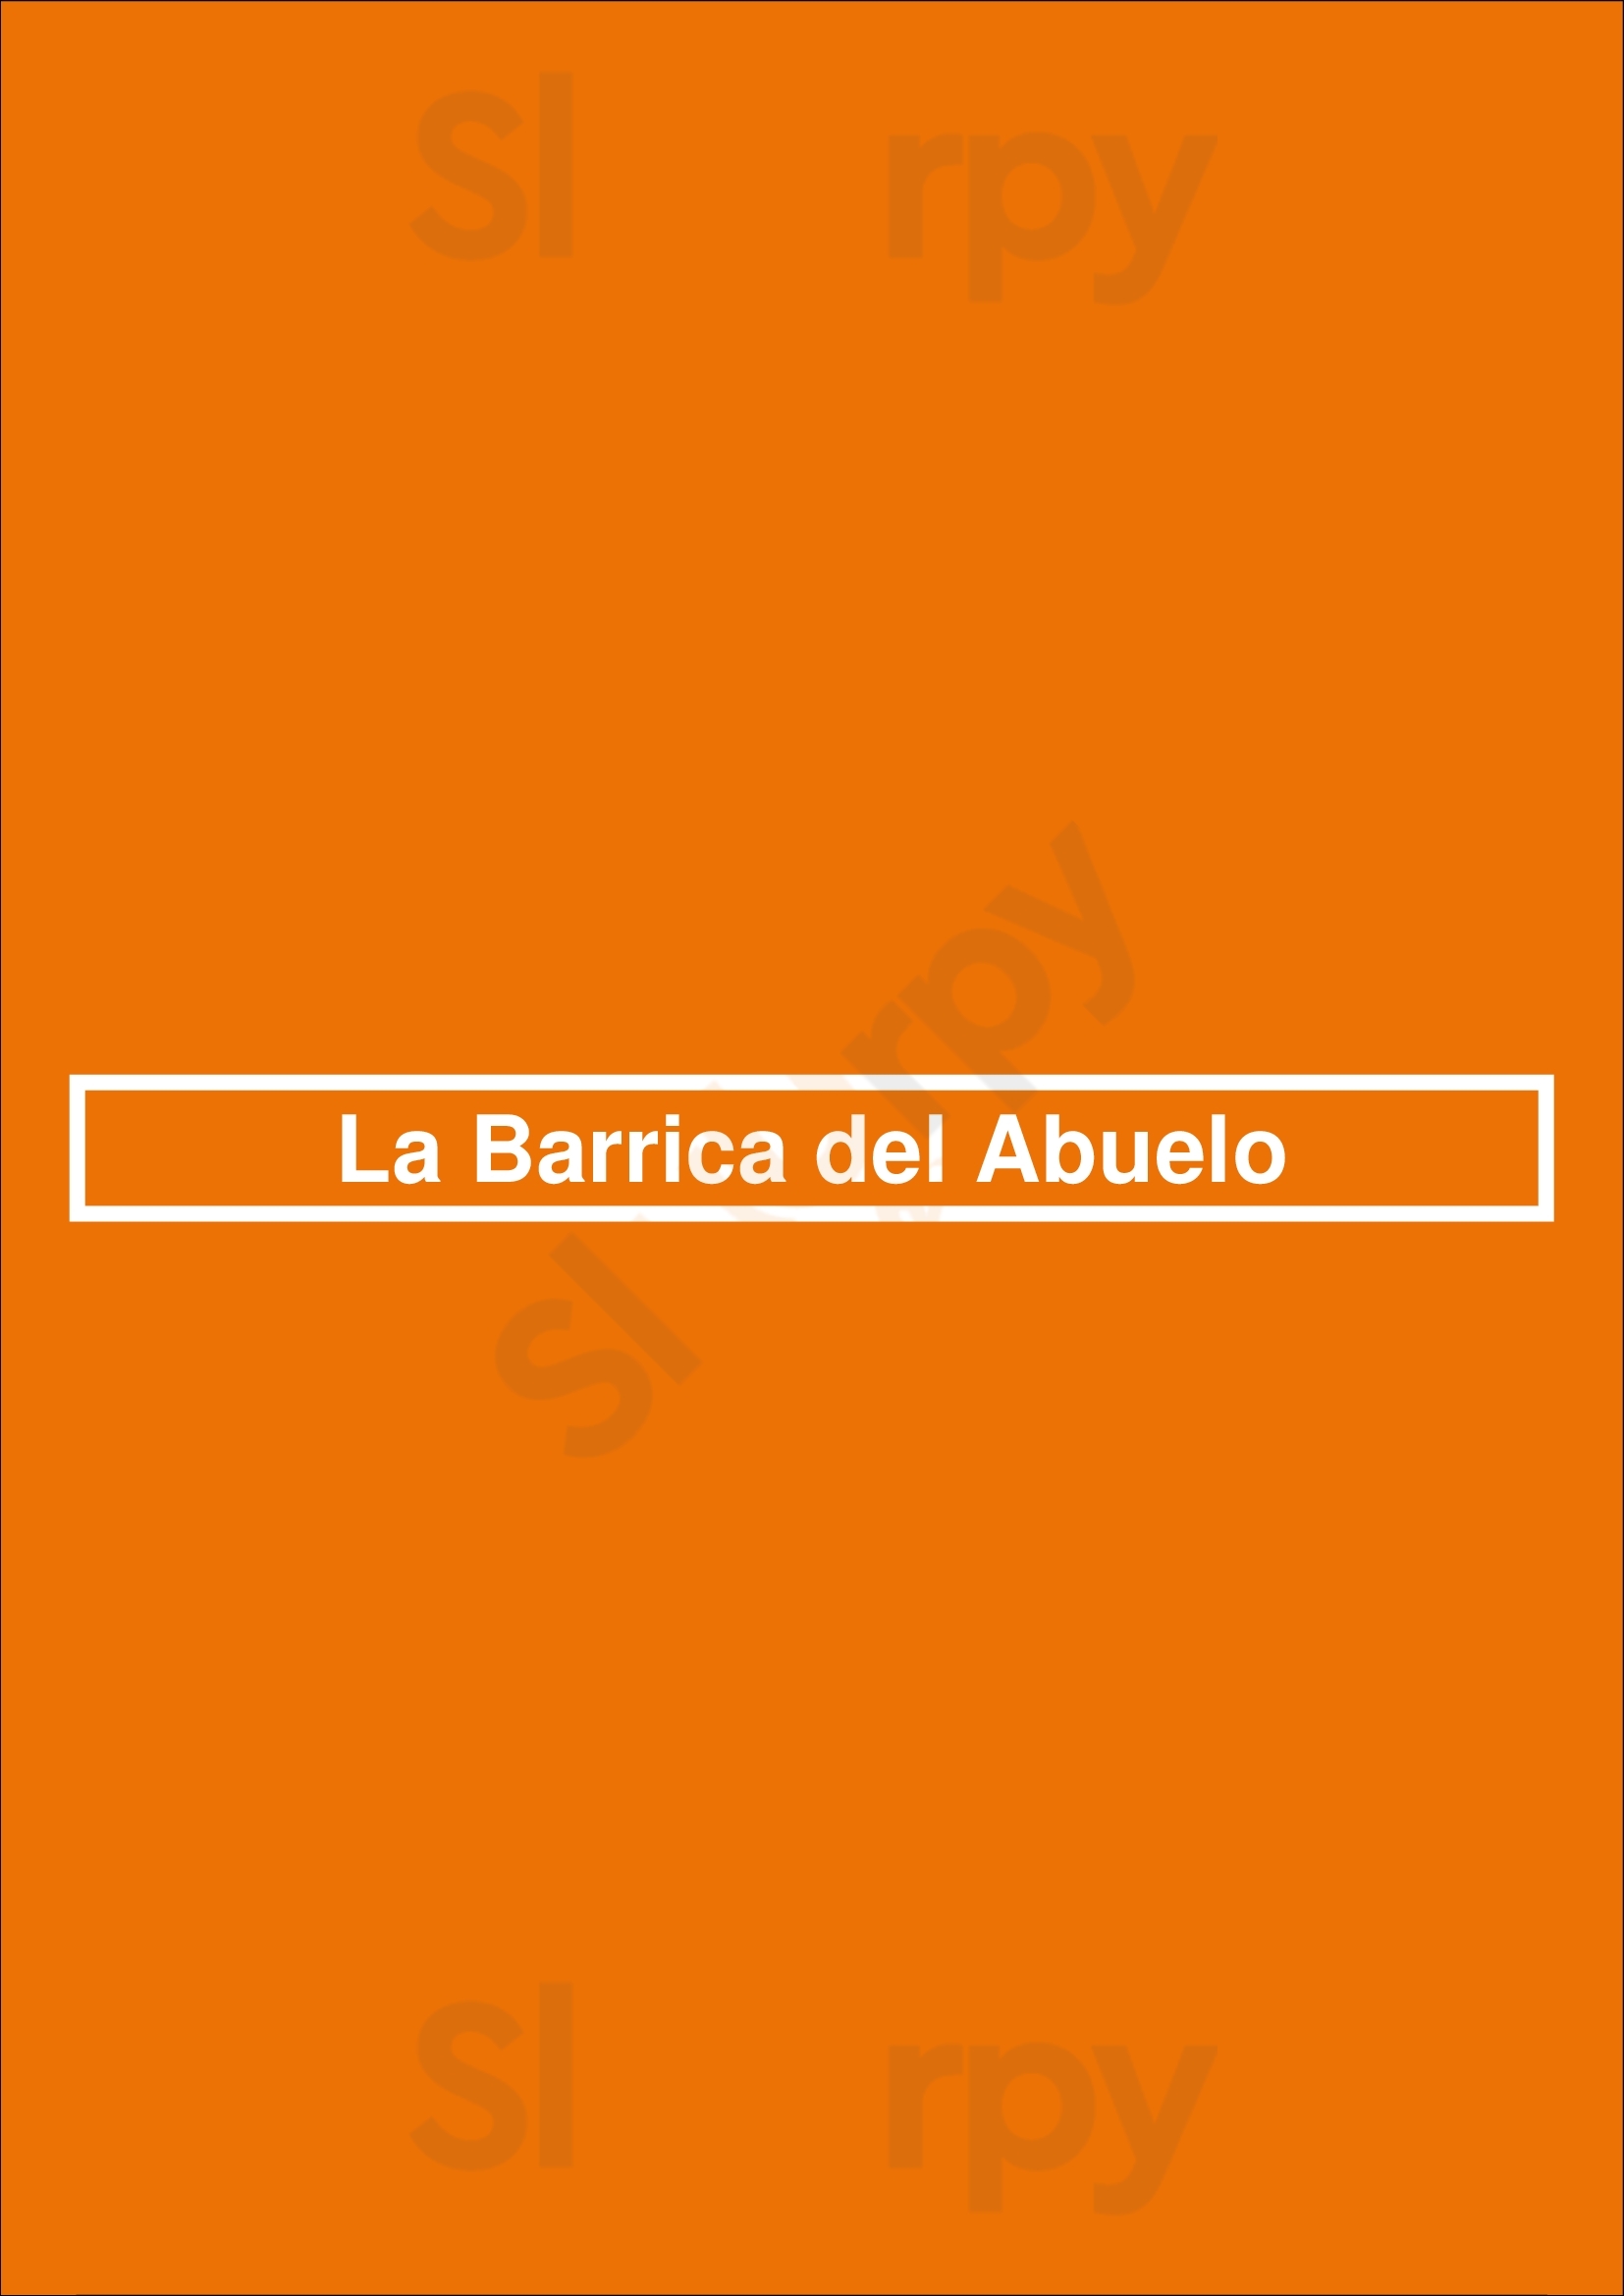 La Barrica Del Abuelo Madrid Menu - 1